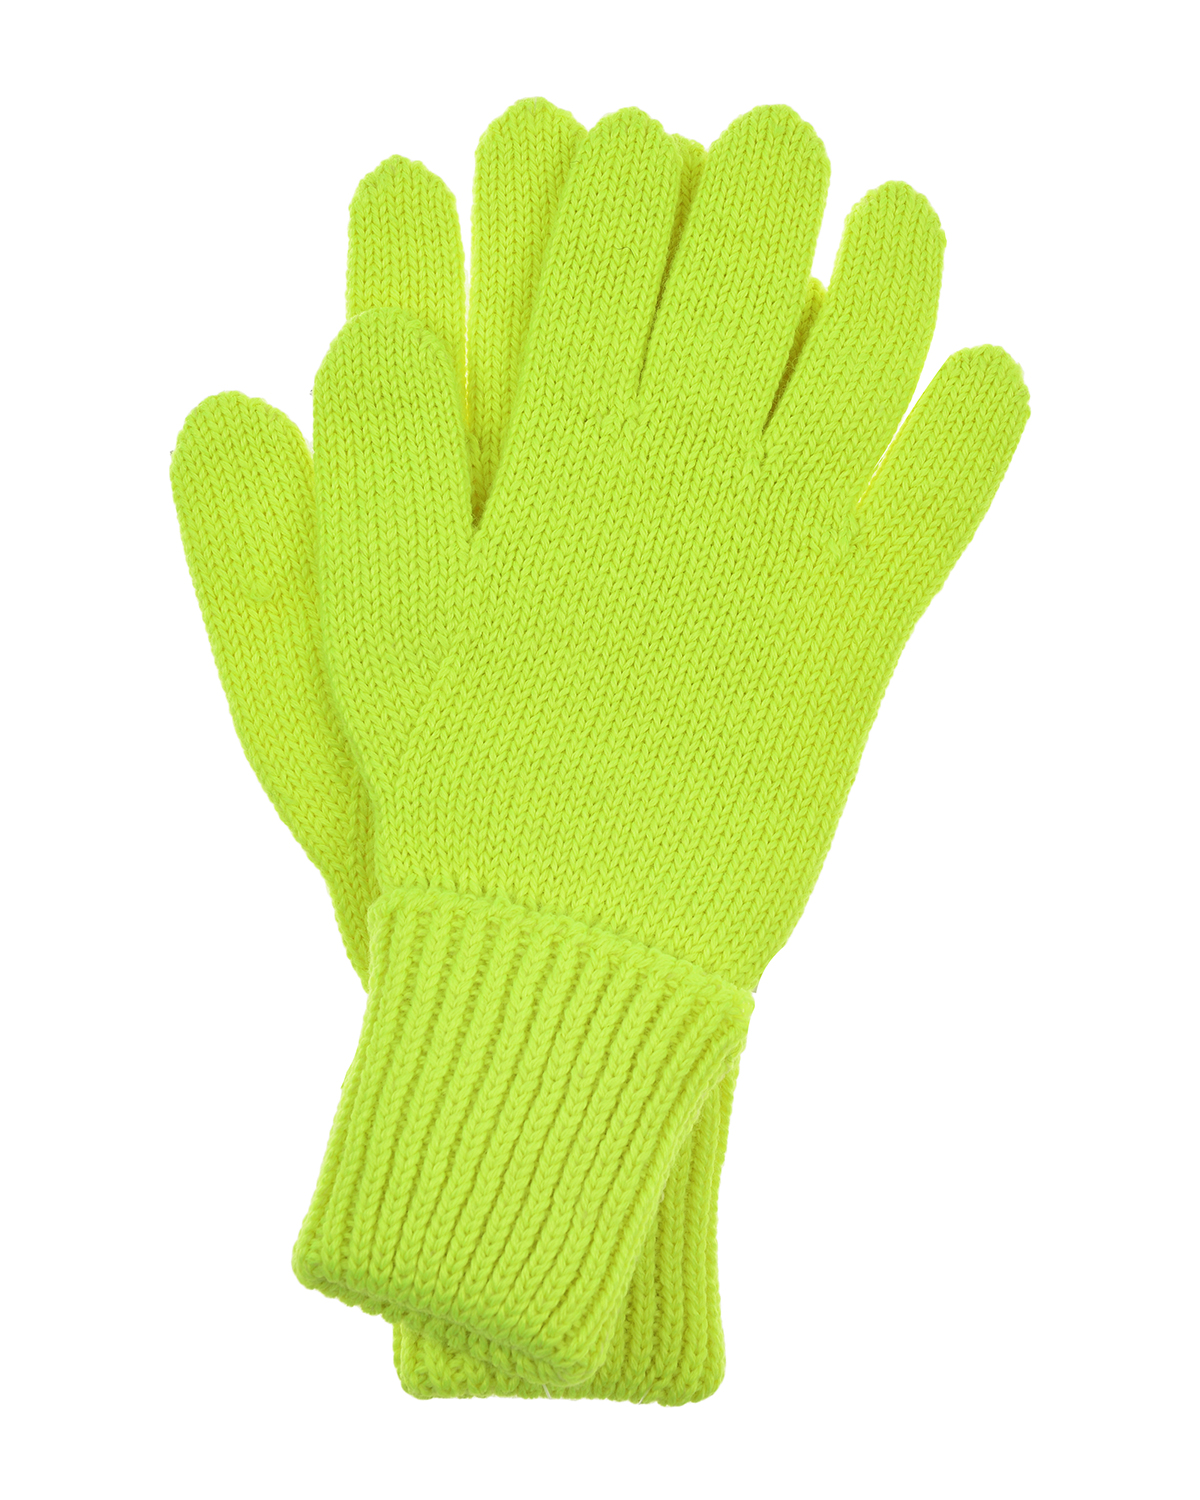 Шерстяные перчатки желтого цвета Chobi детские, размер 4